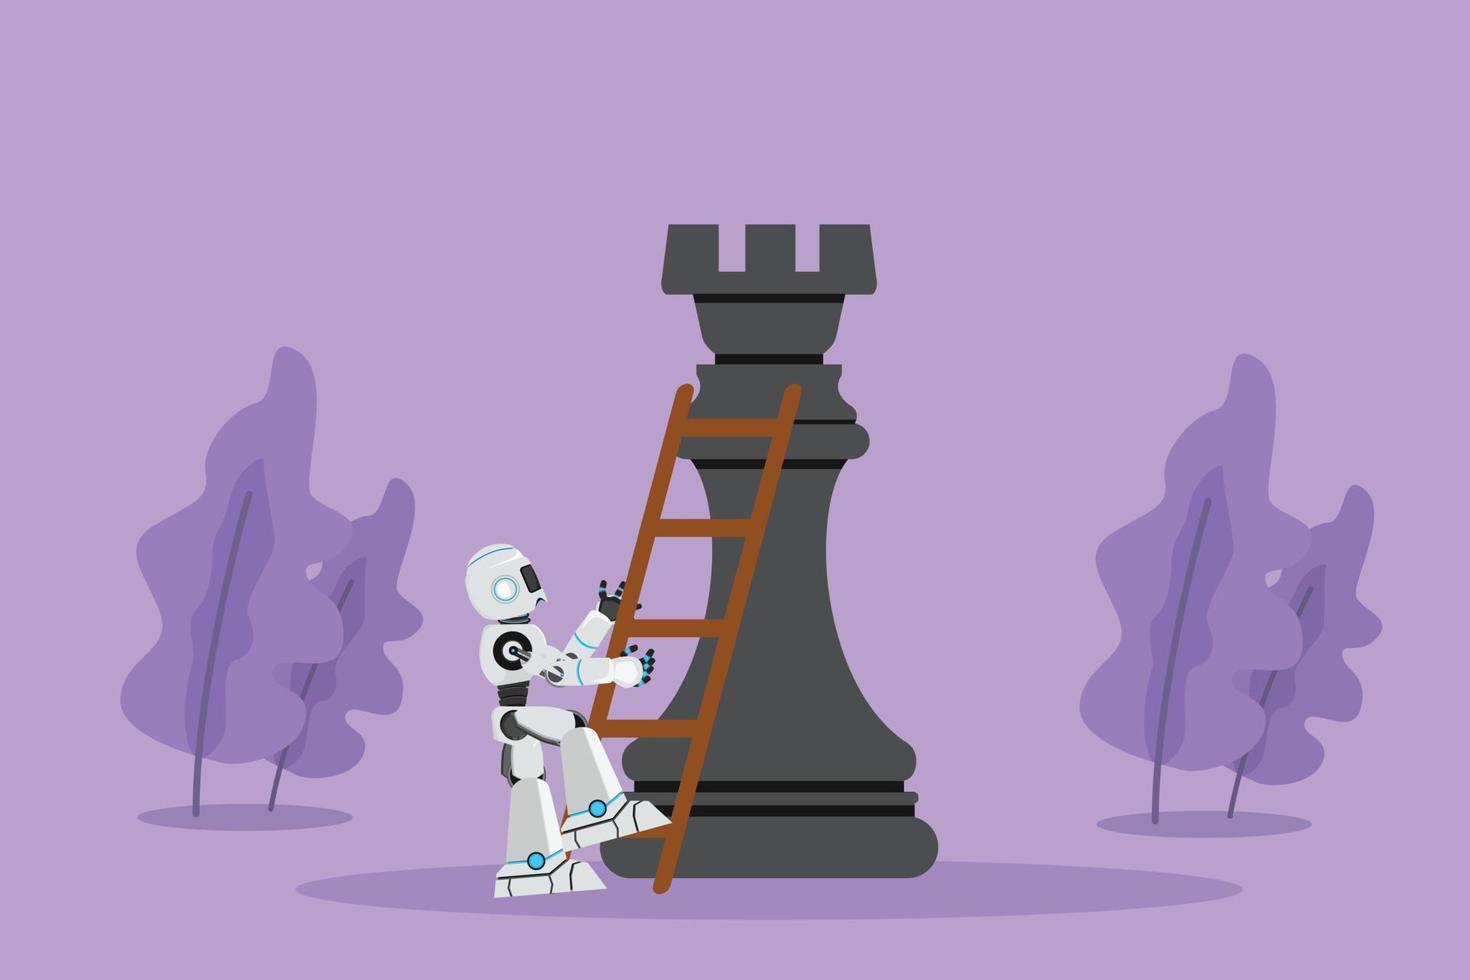 desenho animado estilo plano robô escalar enorme peça de xadrez de torre com escada. competição de jogadas estratégicas ou inteligentes. inteligência artificial robótica. indústria de tecnologia. ilustração em vetor design gráfico